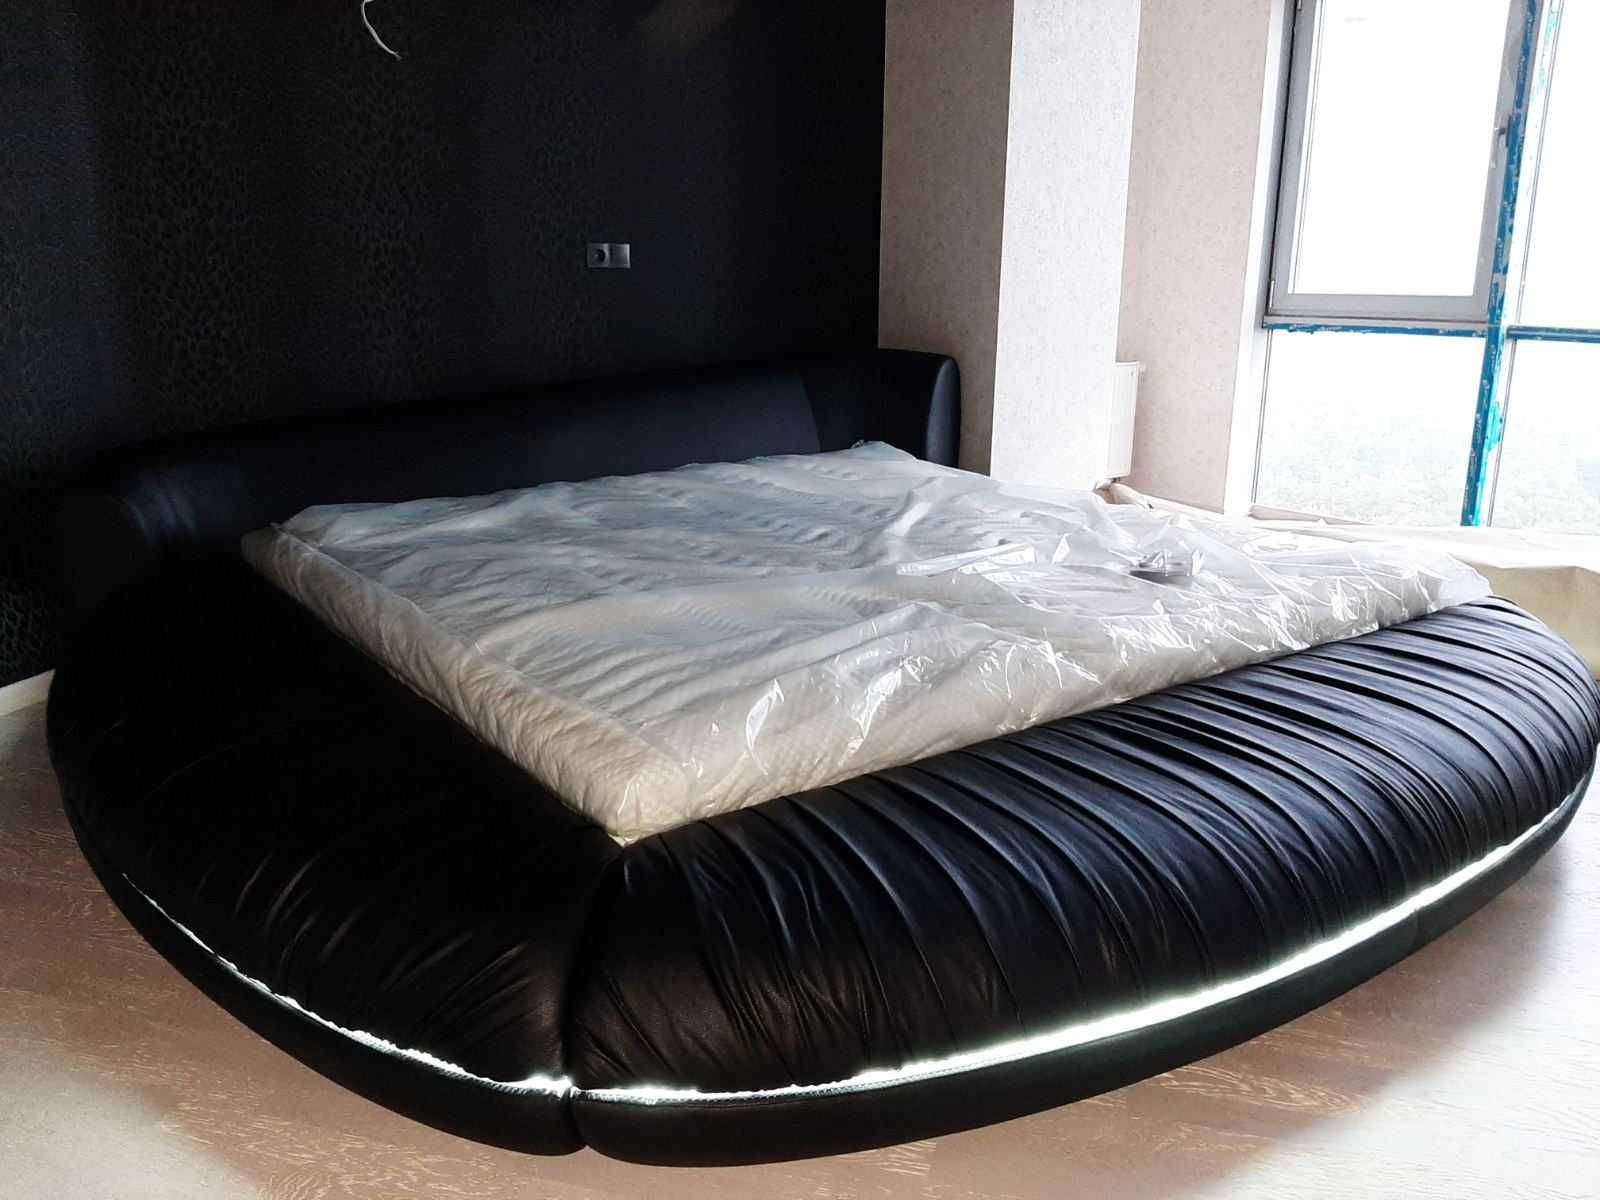 Кругле ліжко ARIS Carolean / Шикарная Круглая кровать с подсветкой!